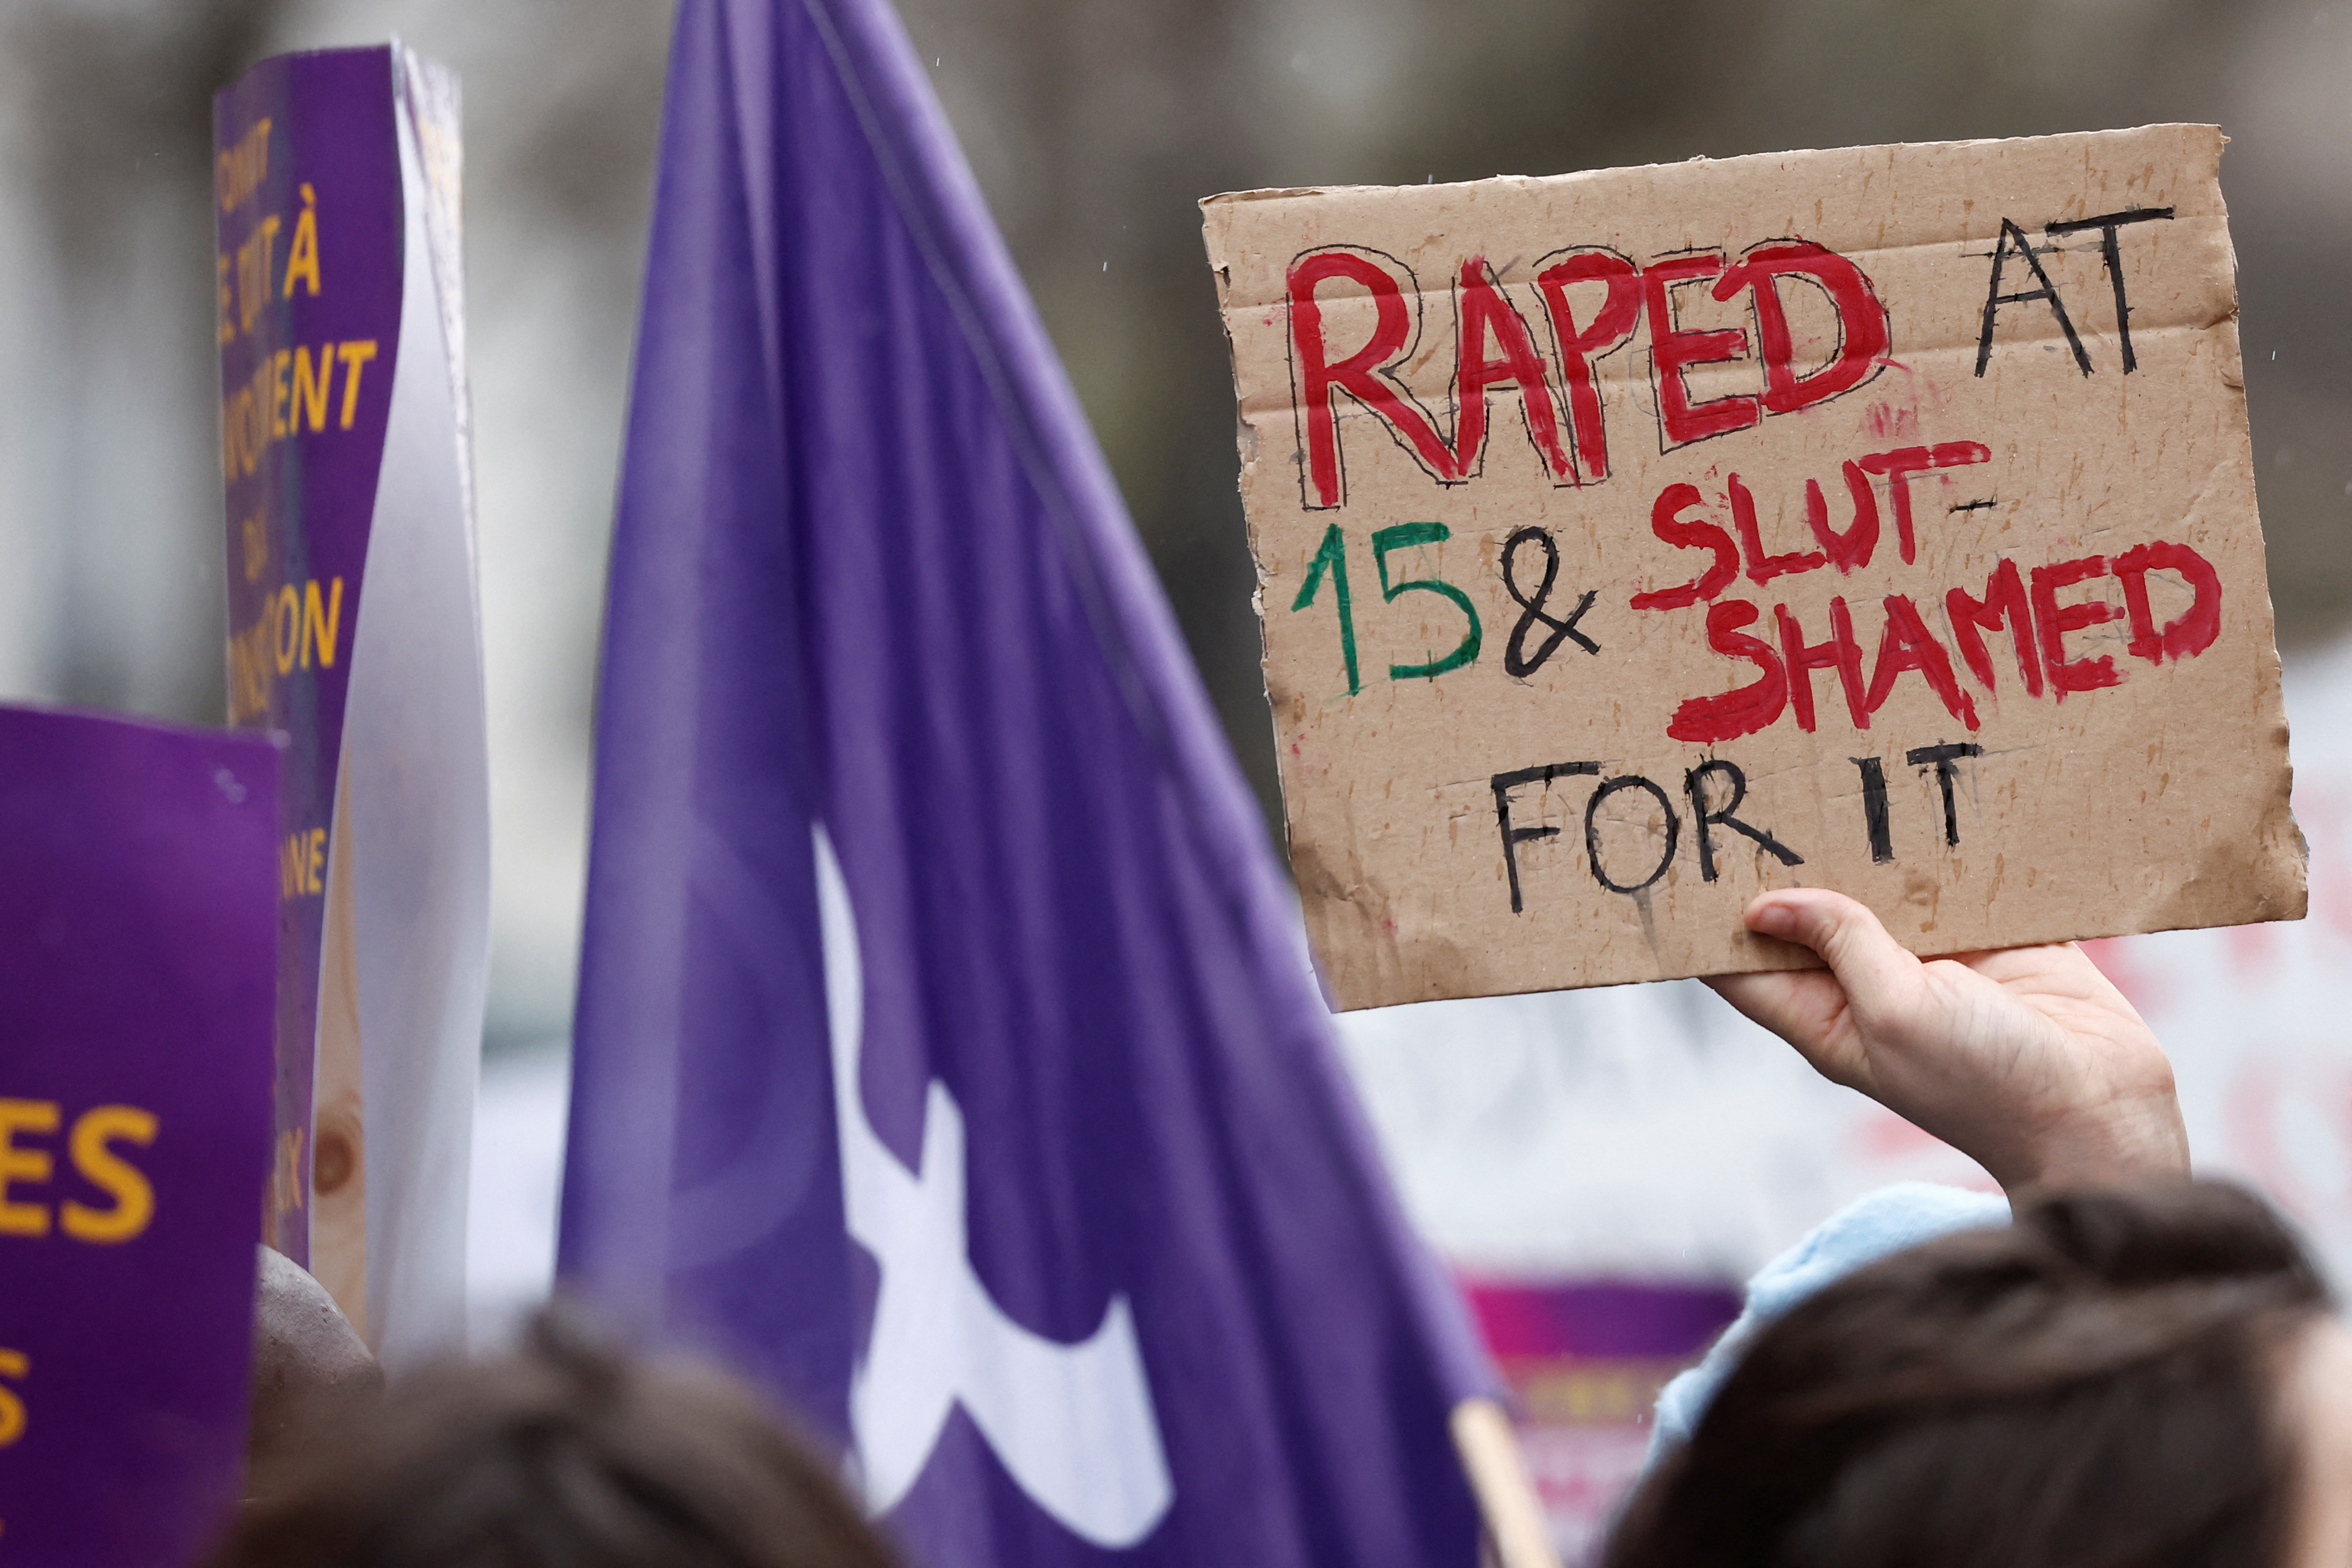 Una mujer muestra un cartel que dice "Violada a los 15 y tildada de puta por ello", en Francia.